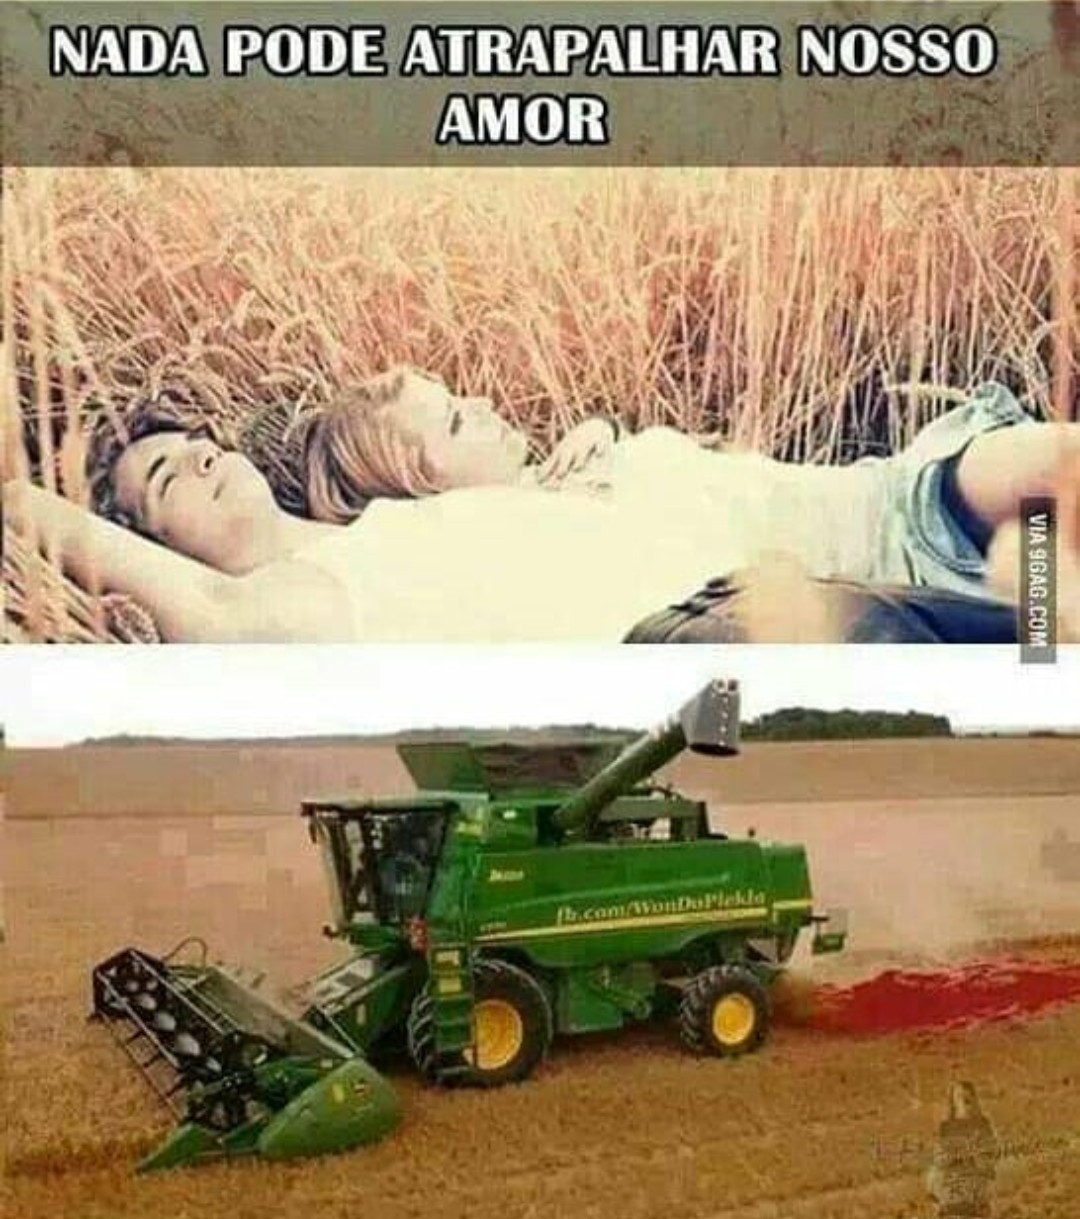 Maquinas agrícolas é uma delícia - meme